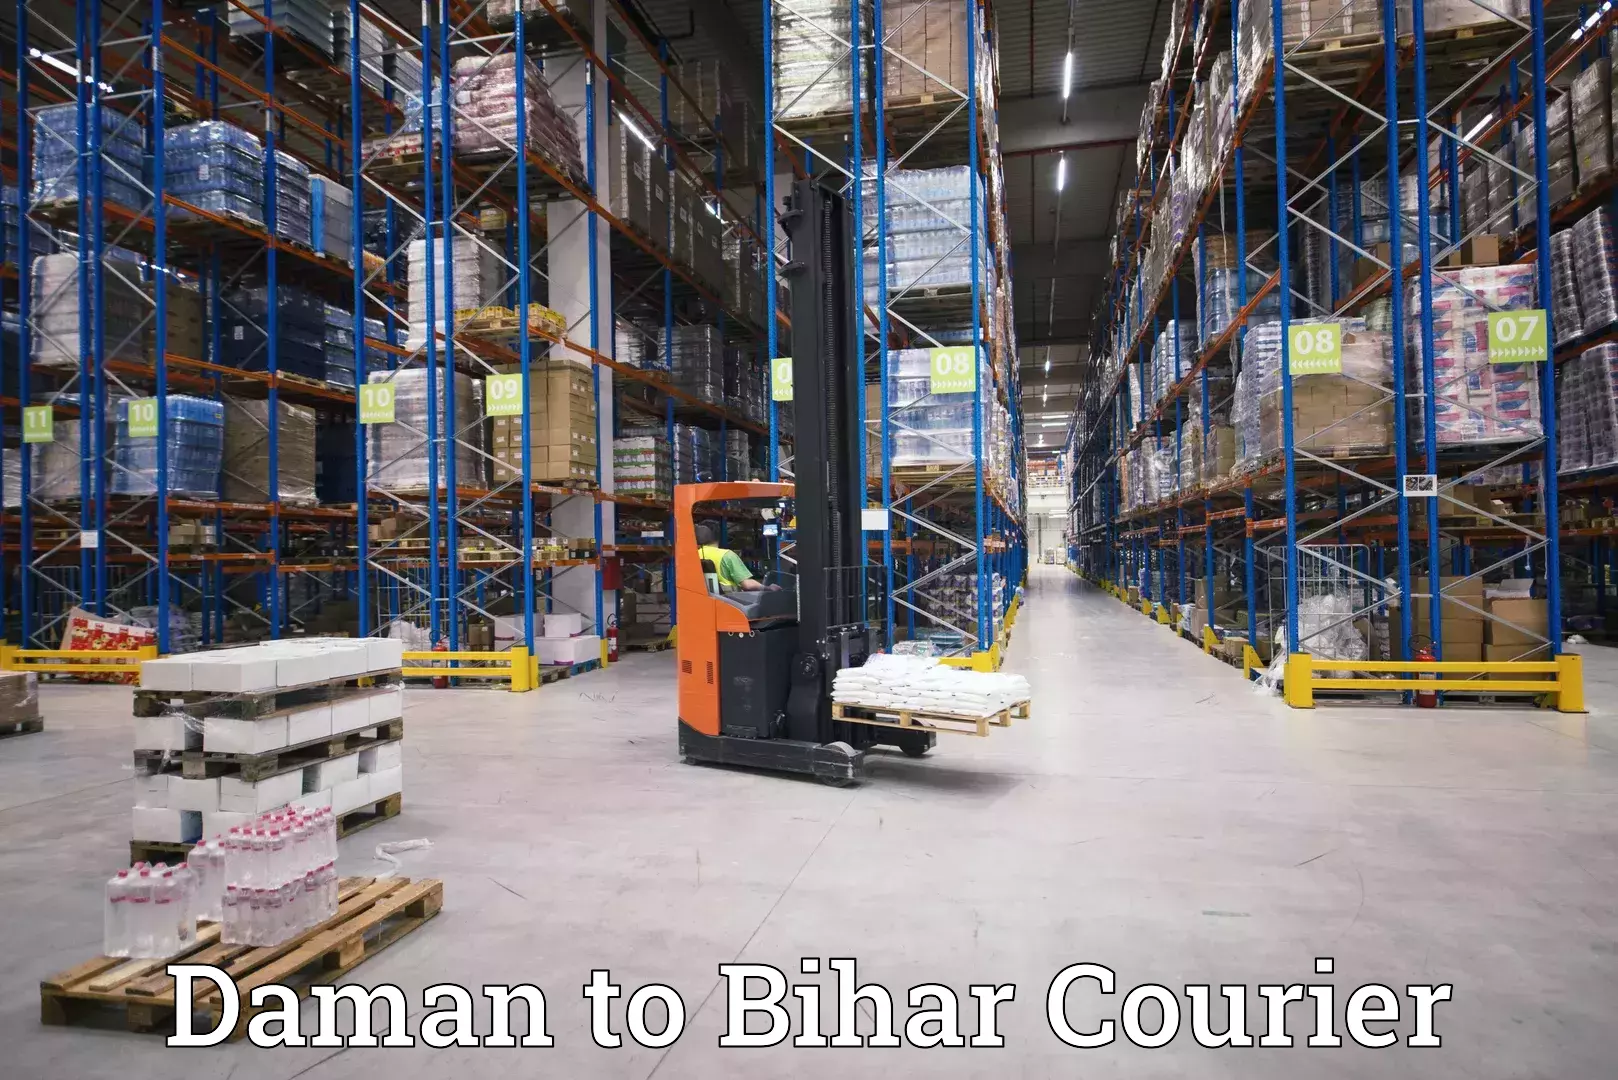 Business shipping needs Daman to Bihar